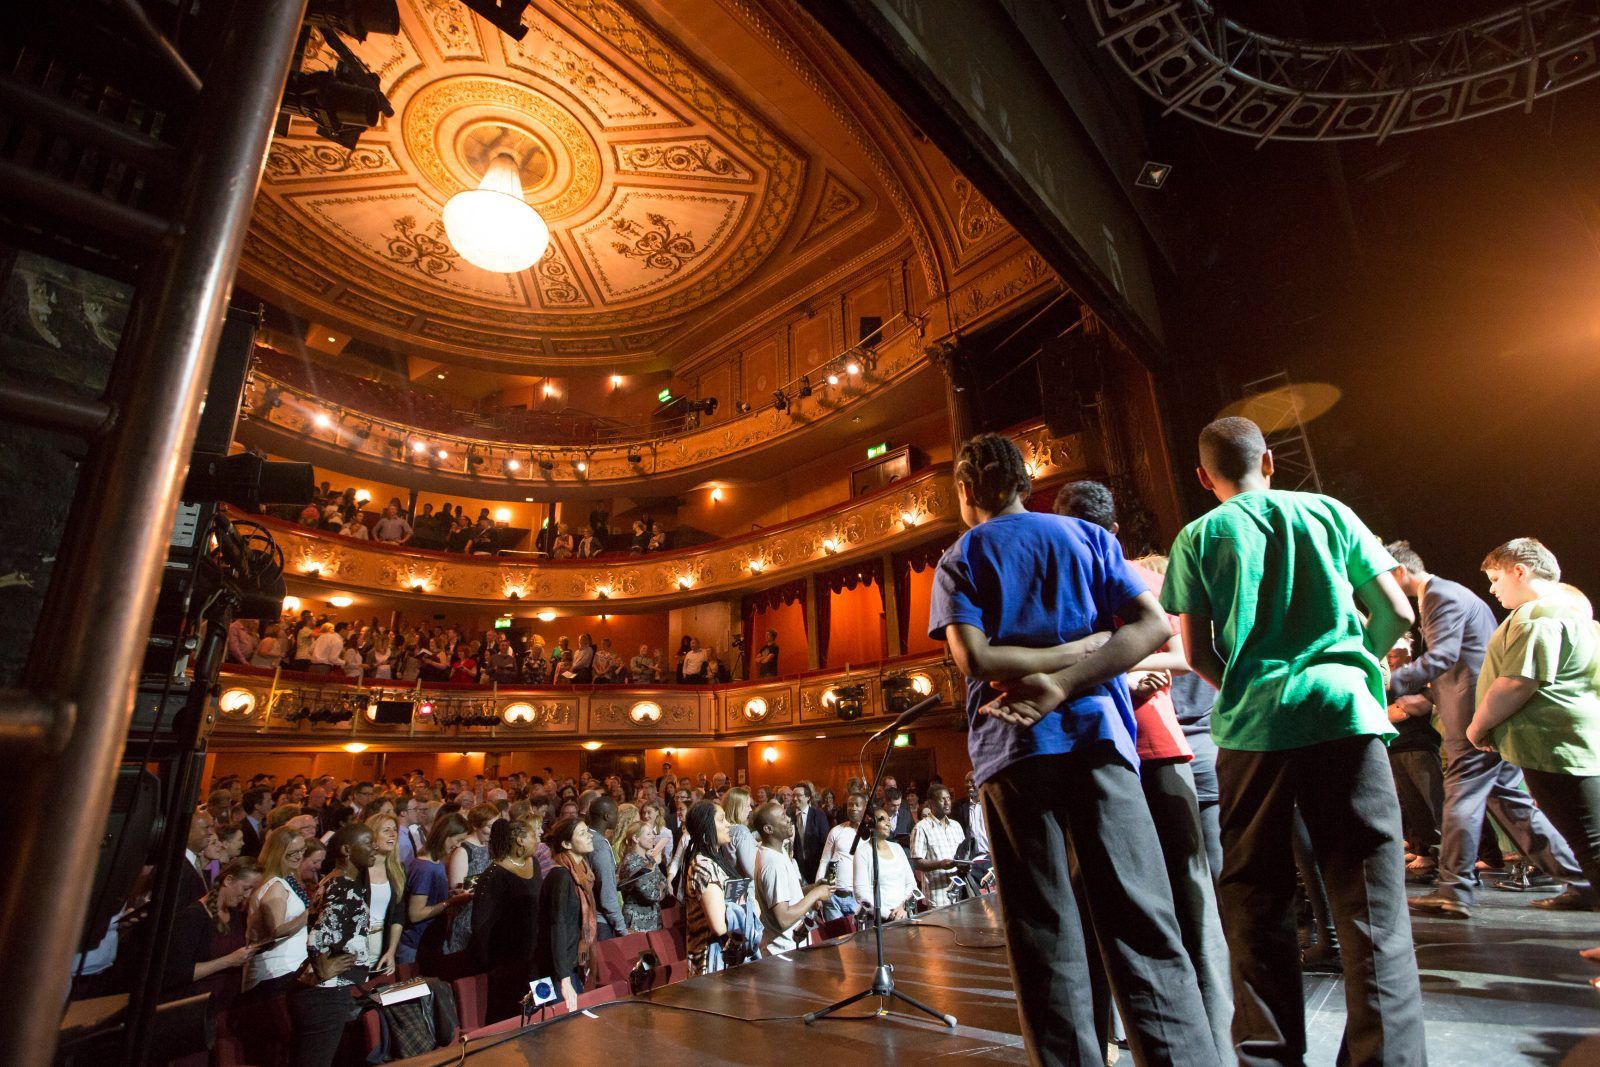 Coram Shakespeare Schools Foundation children on stage.